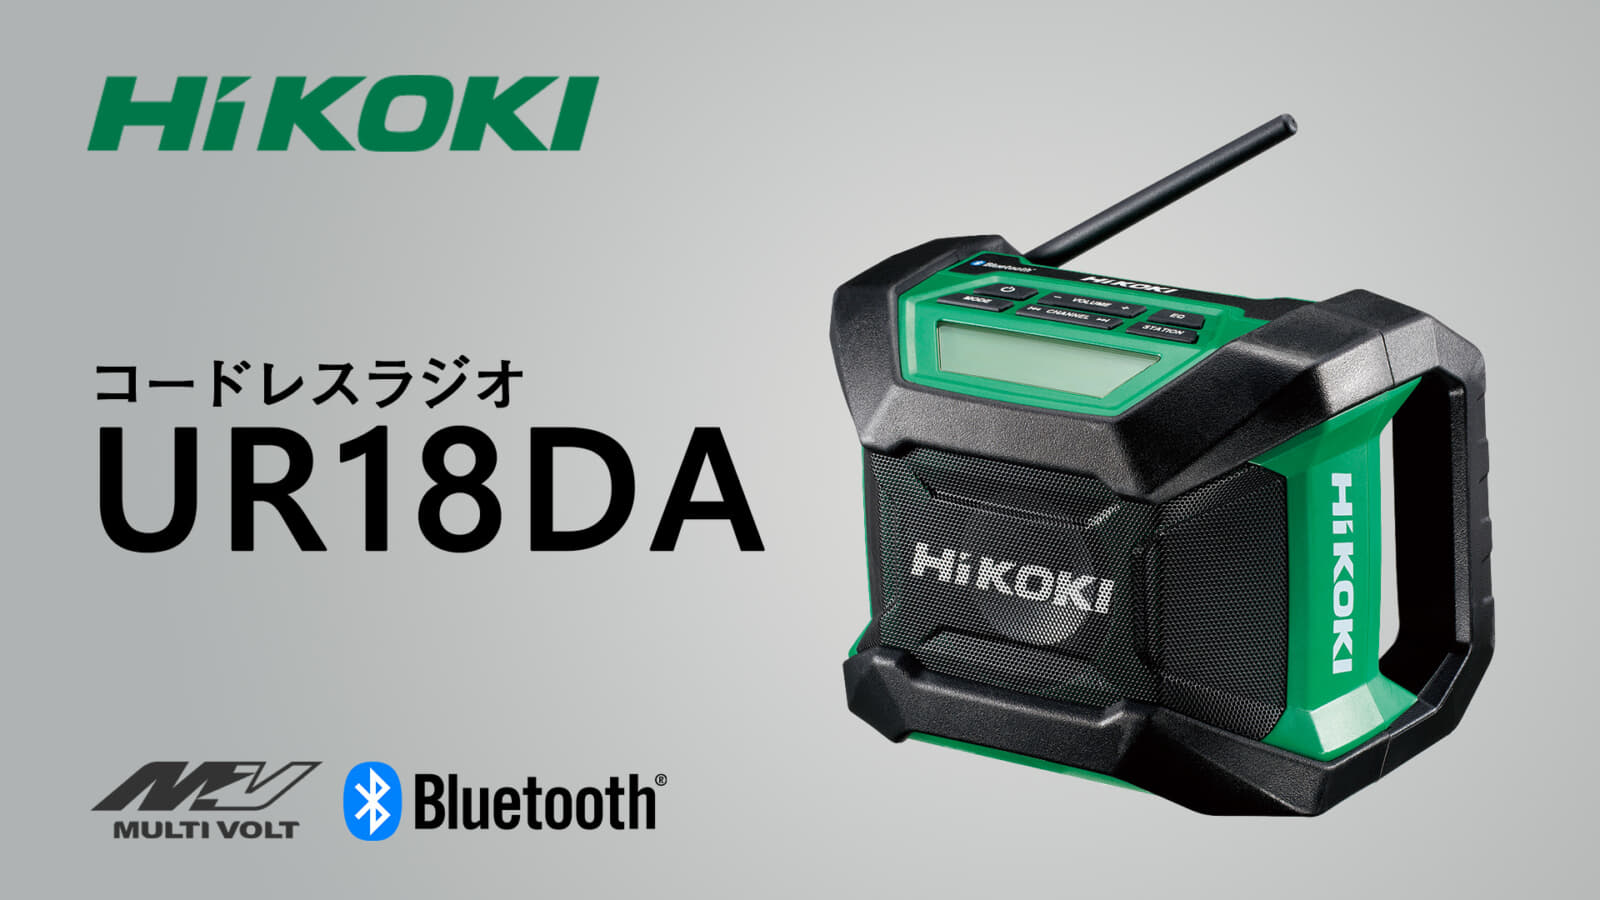 オーディオ機器 スピーカー HiKOKI UR18DA コードレスラジオを発売、小型・軽量の省スペース 